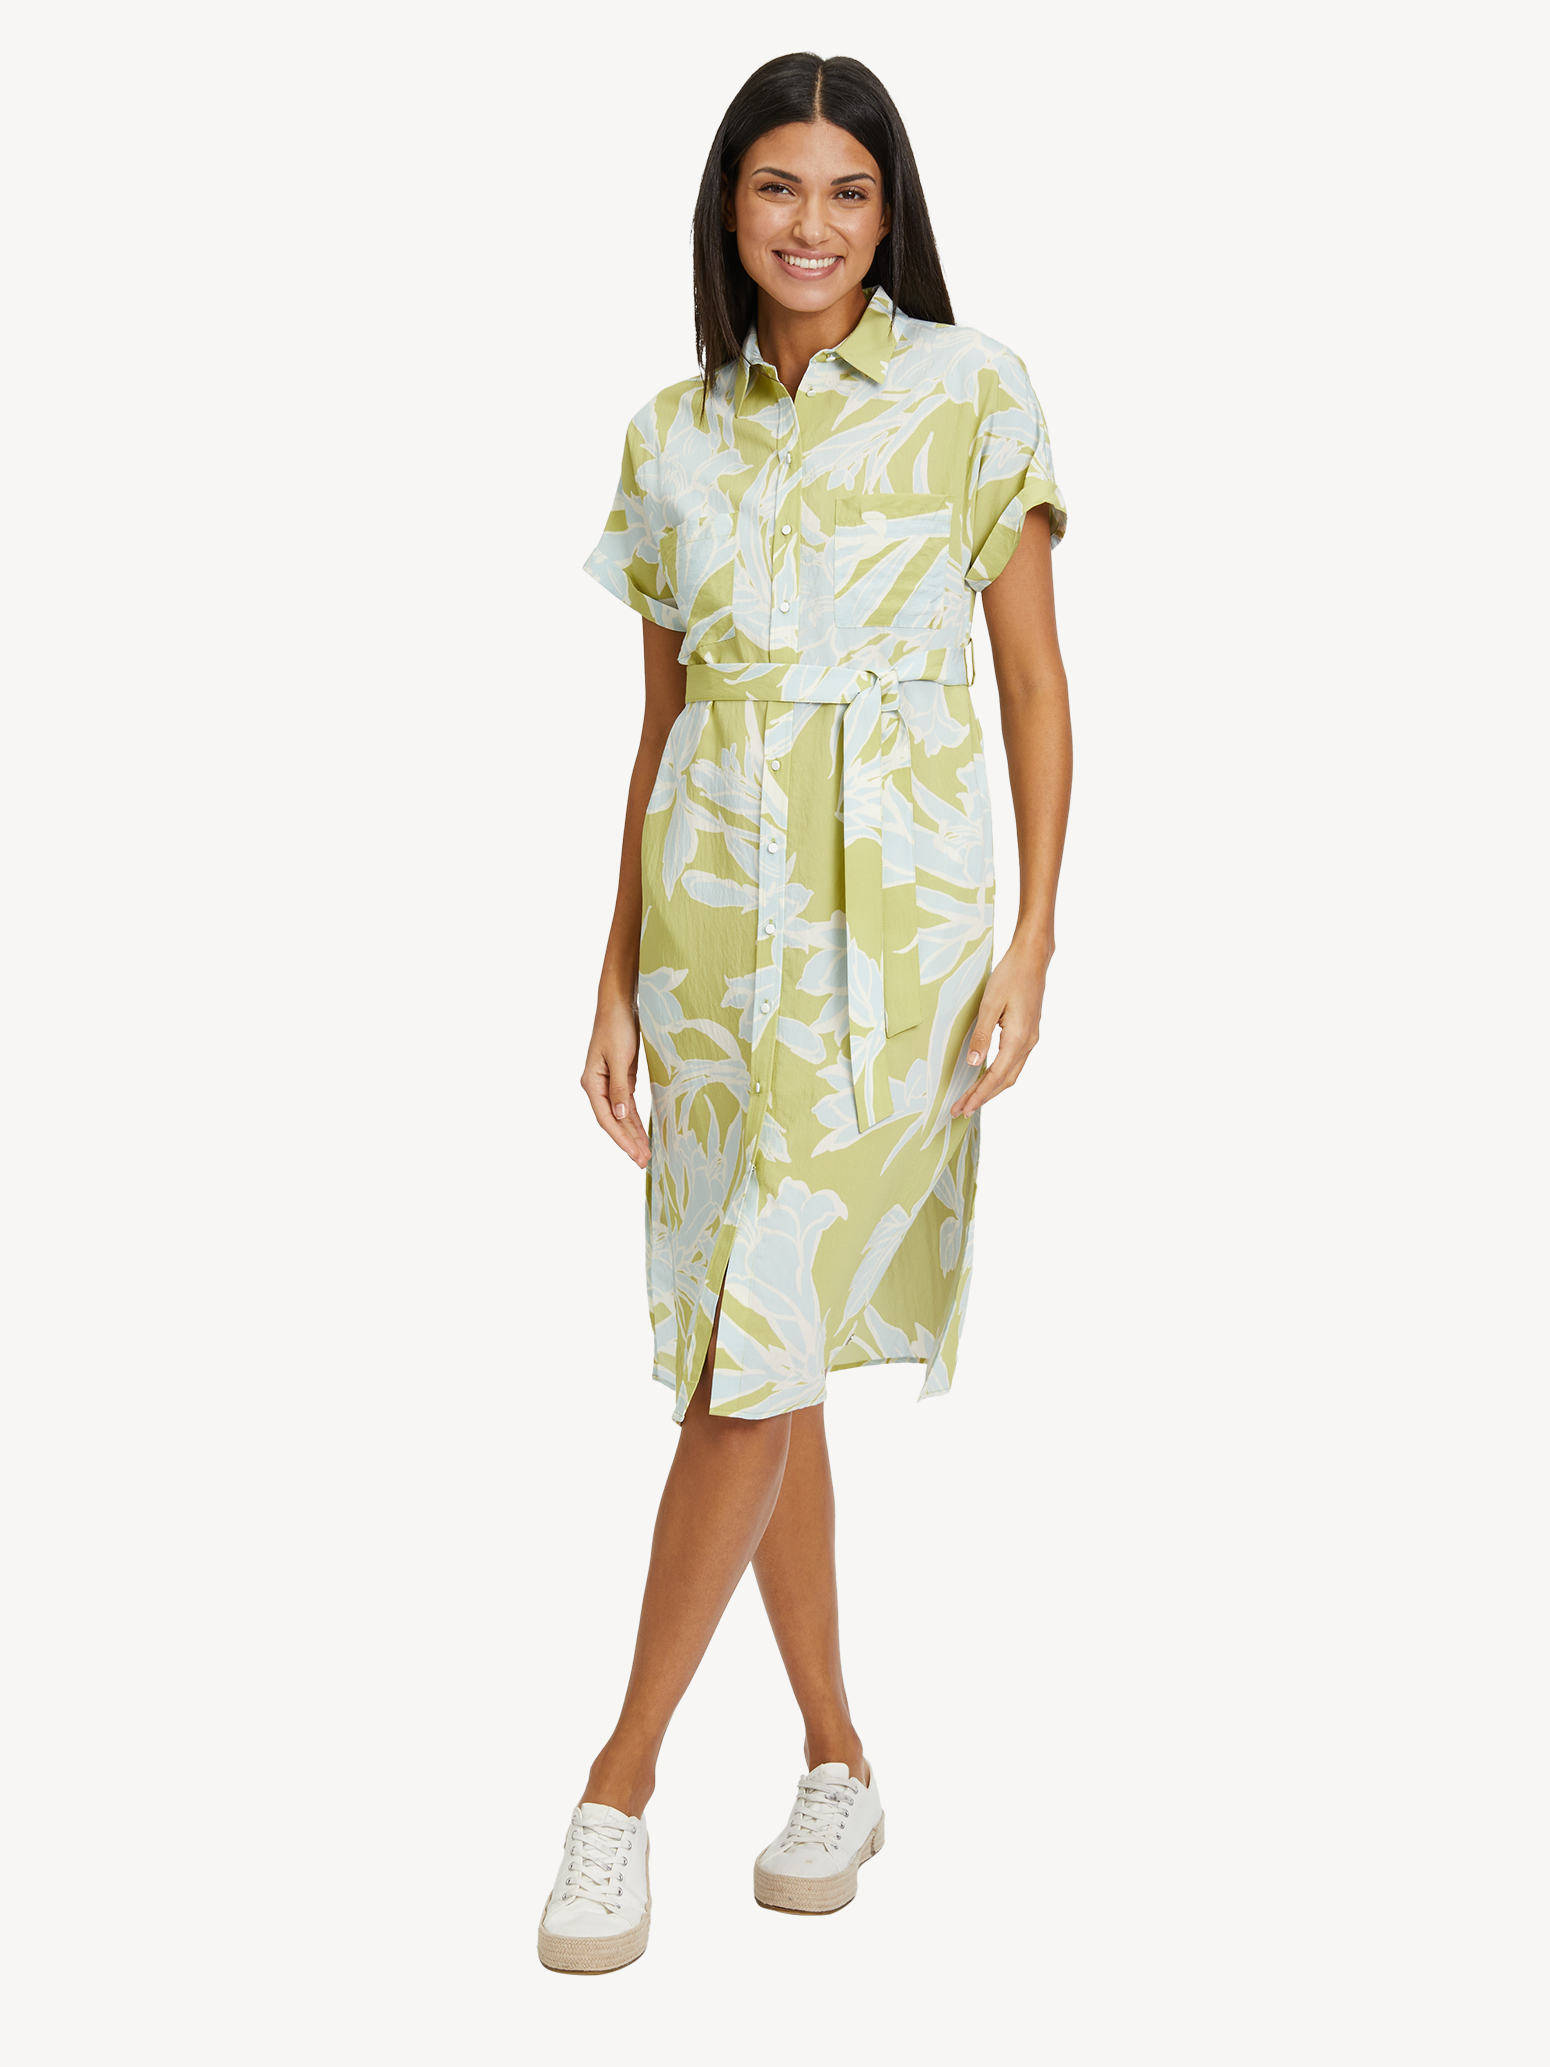 TAW0425-63102: - Tamaris Kleid Maxi Alle kaufen! grün online Kleidungsstücke